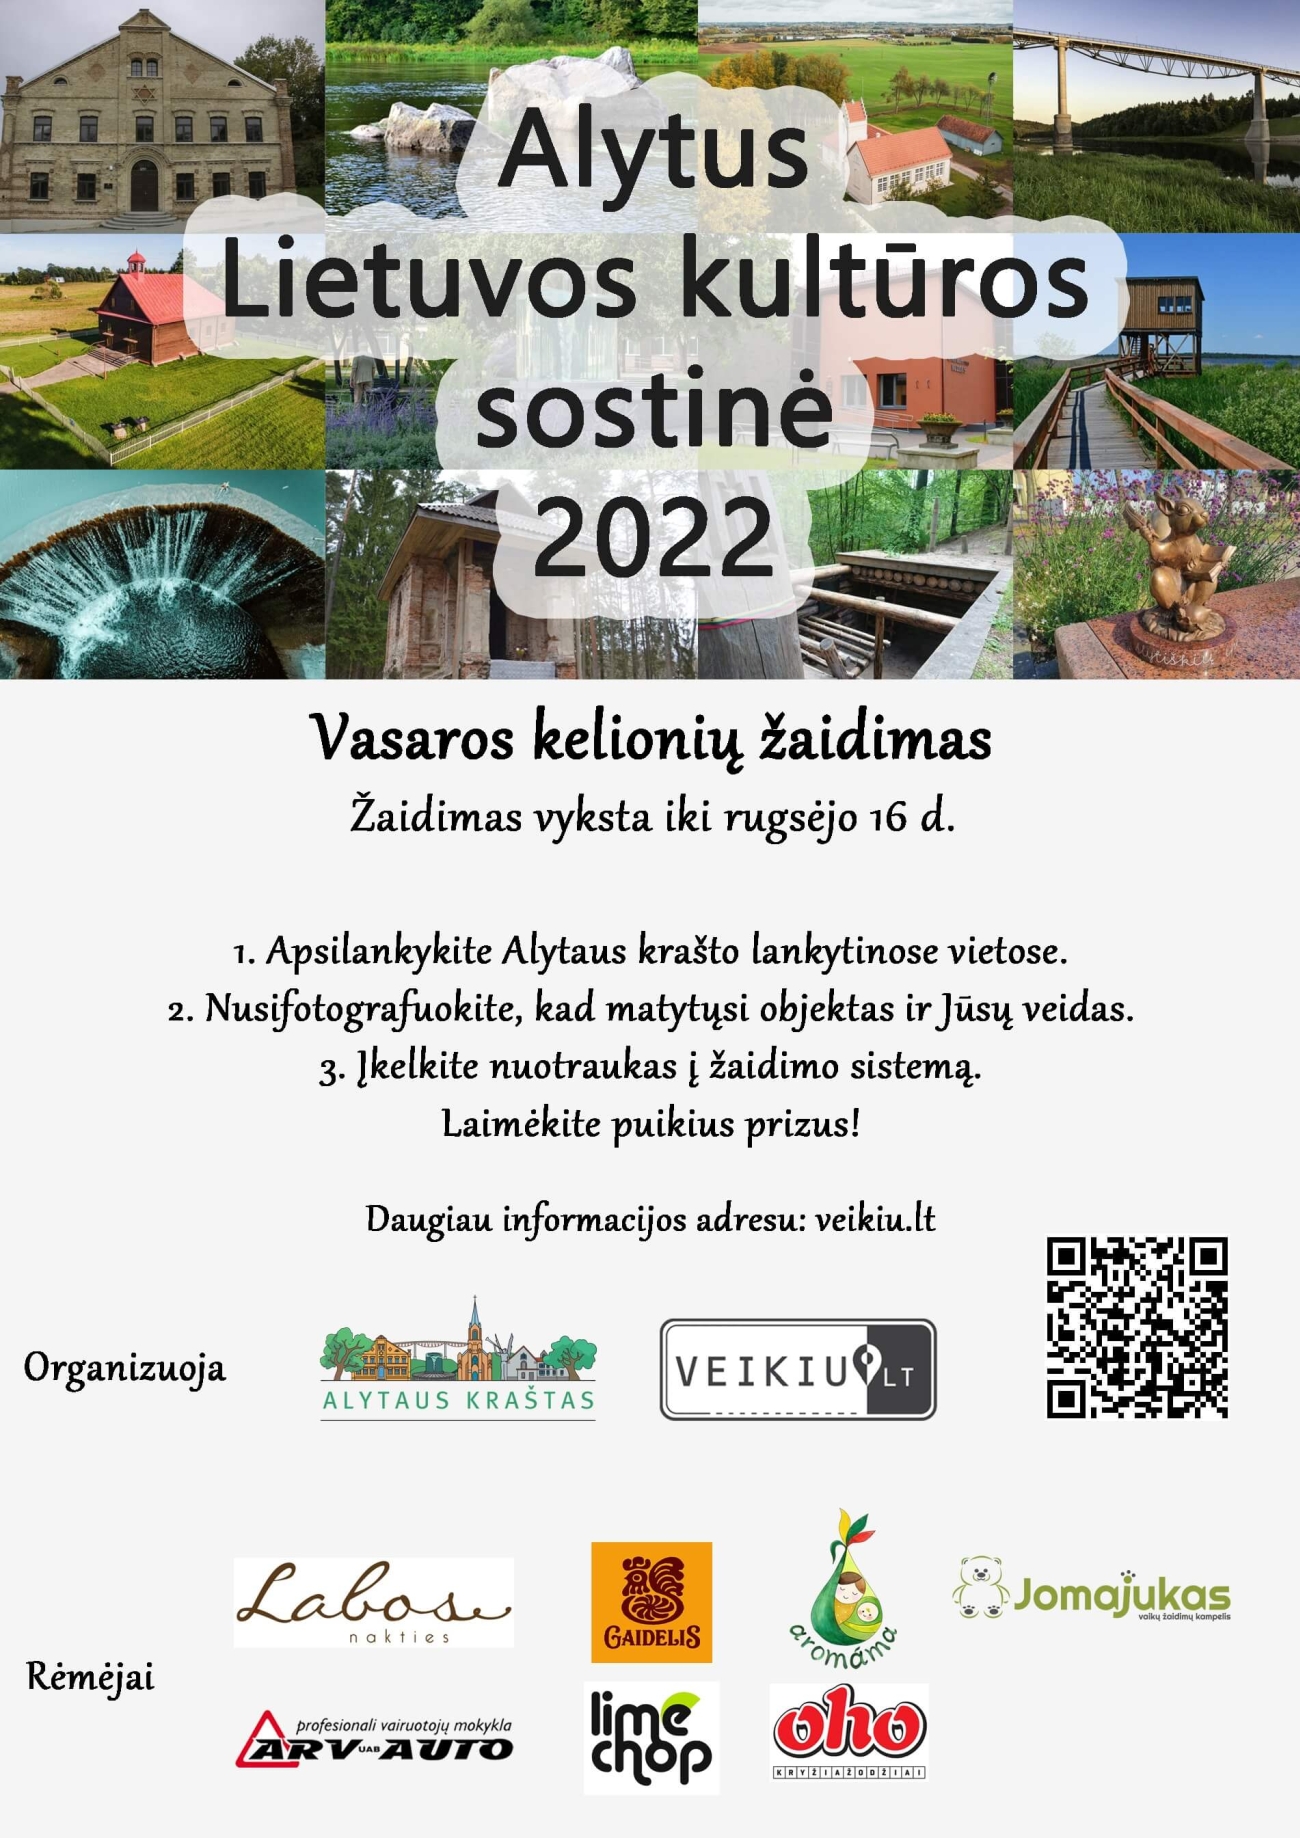 Alytus - Lietuvos kultūros sostinė 2022